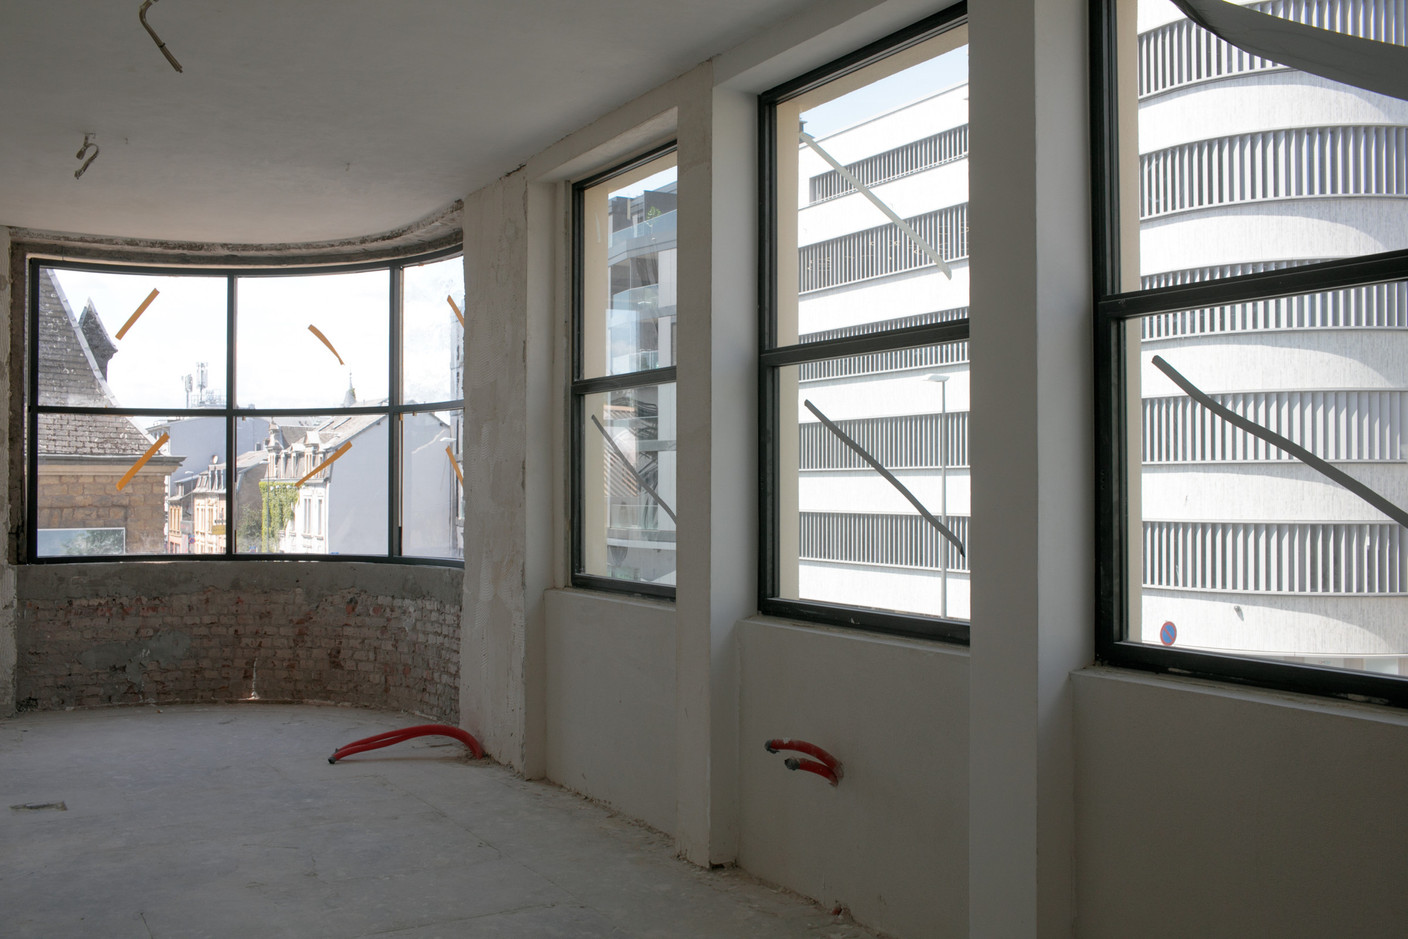 Les angles courbes et vitrés donnent une allure spécifique au bâtiment. (Photo: Matic Zorman / Maison Moderne)